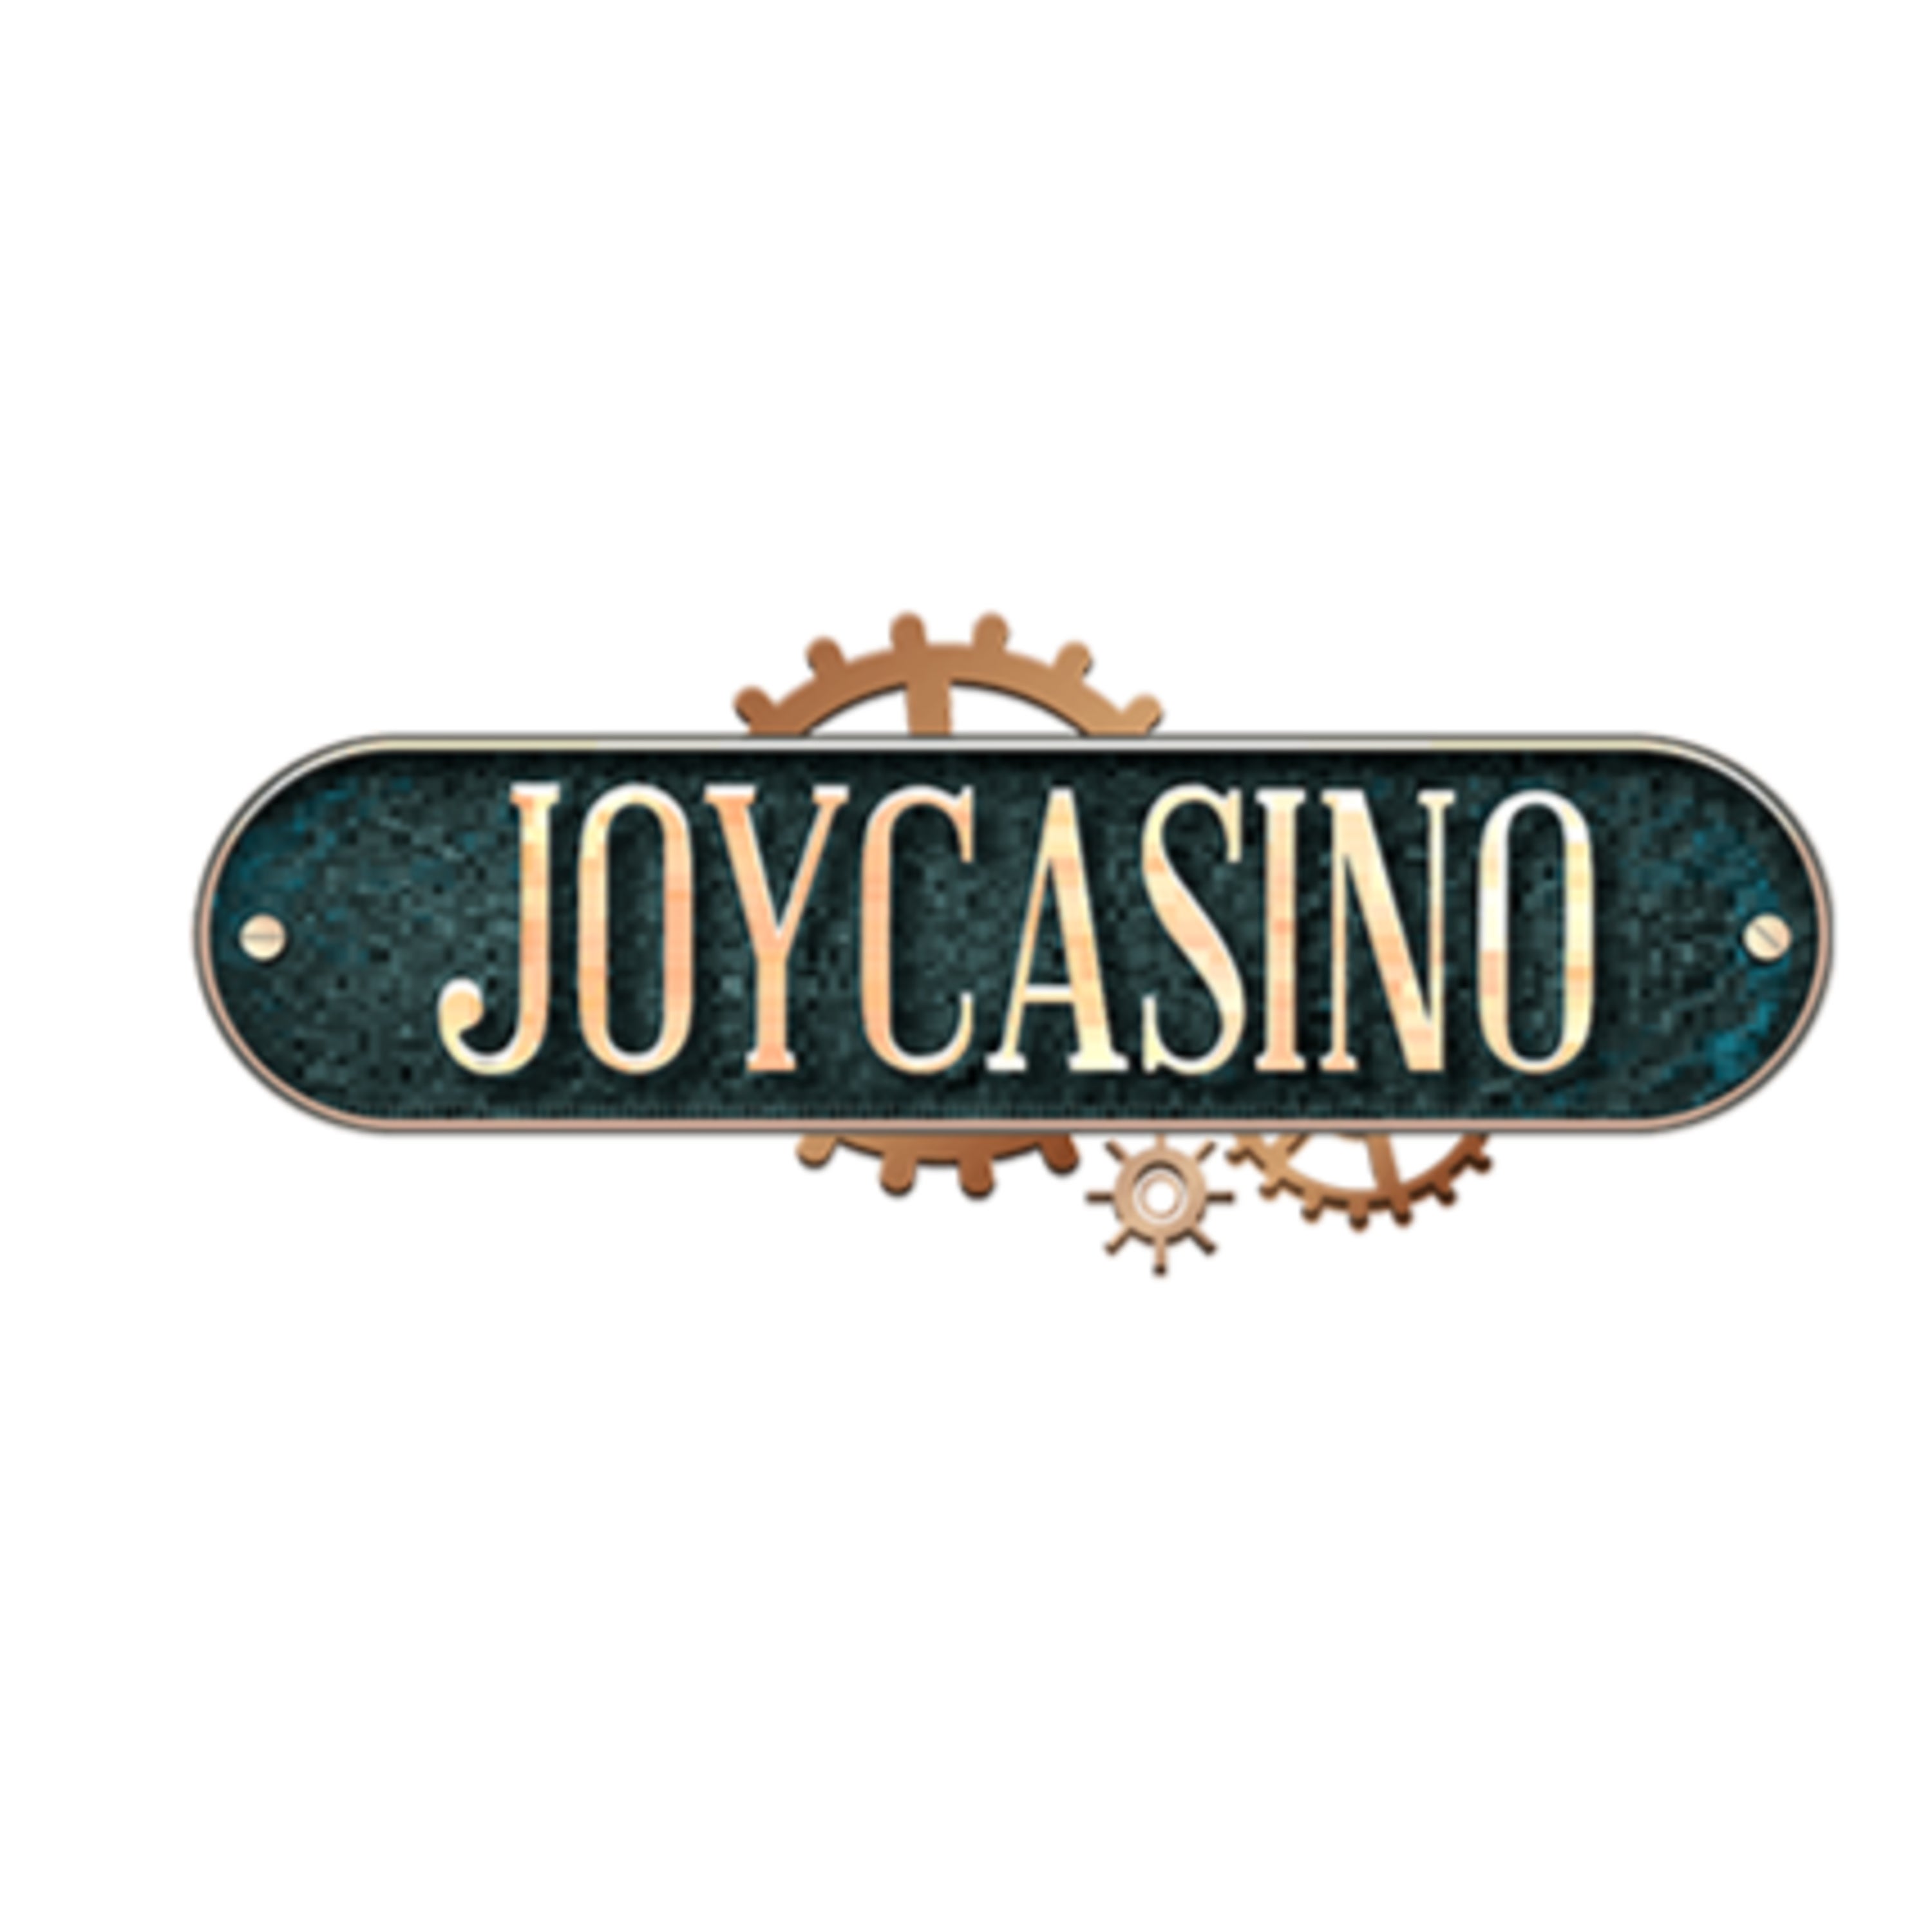 Joycasino зайти на официальный сайт